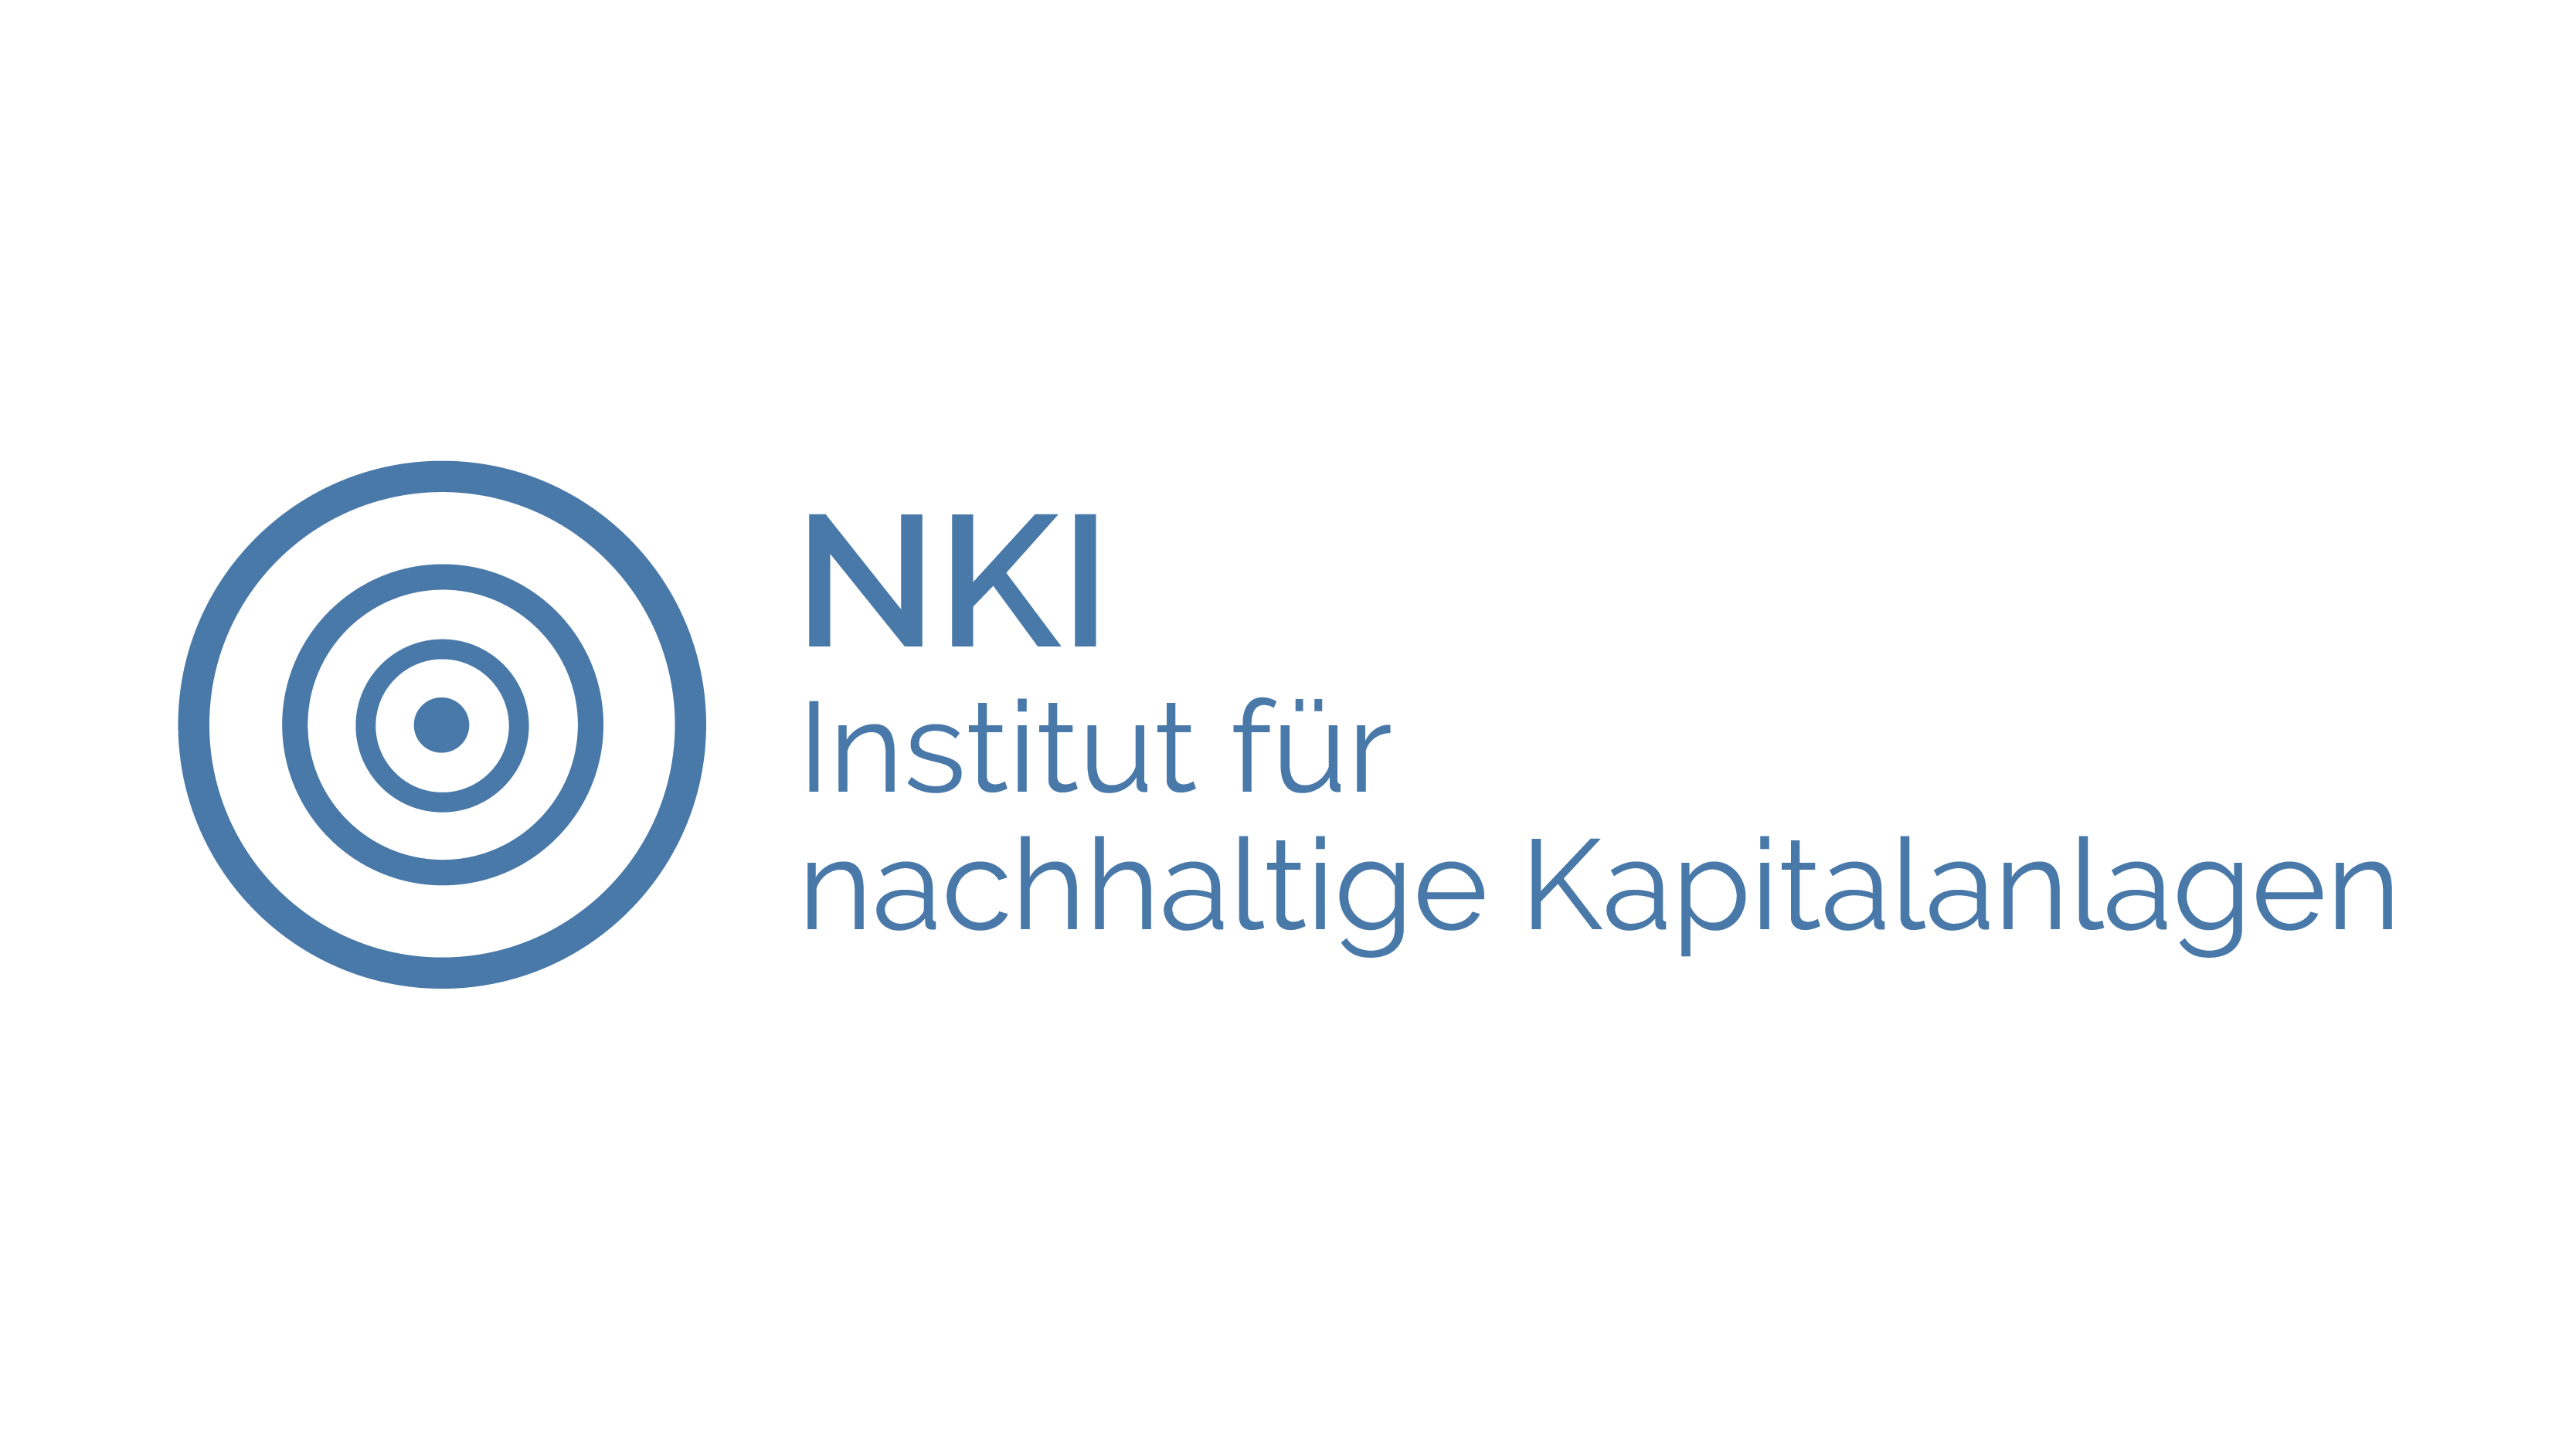 NKI – Institut für nachhaltige Kapitalanlagen